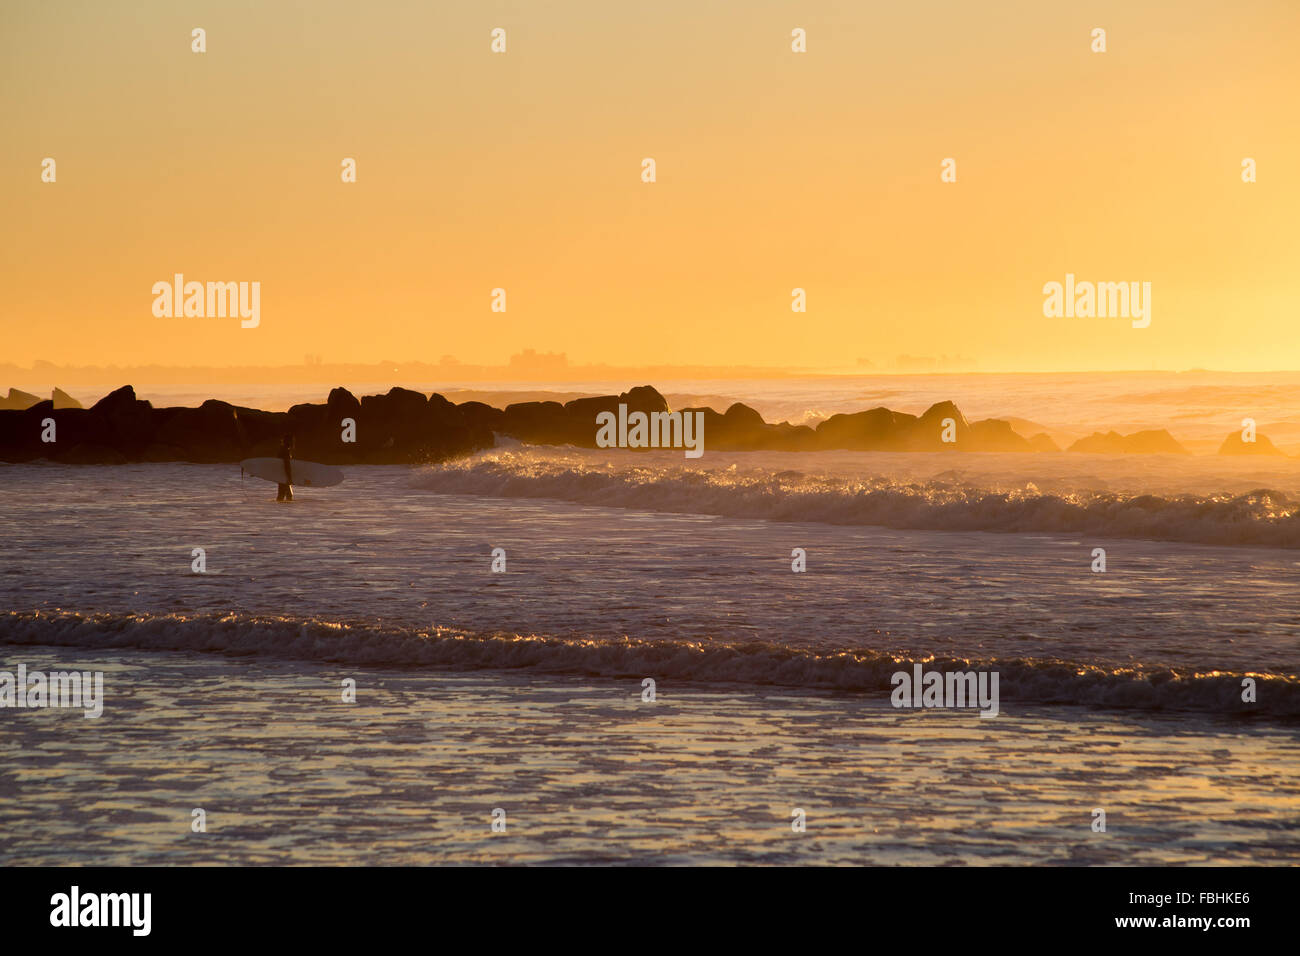 Am frühen Morgen Surfsession in Rockaway Strand, Königinnen, New York. Fotografiert am Oktober 2015. Stockfoto